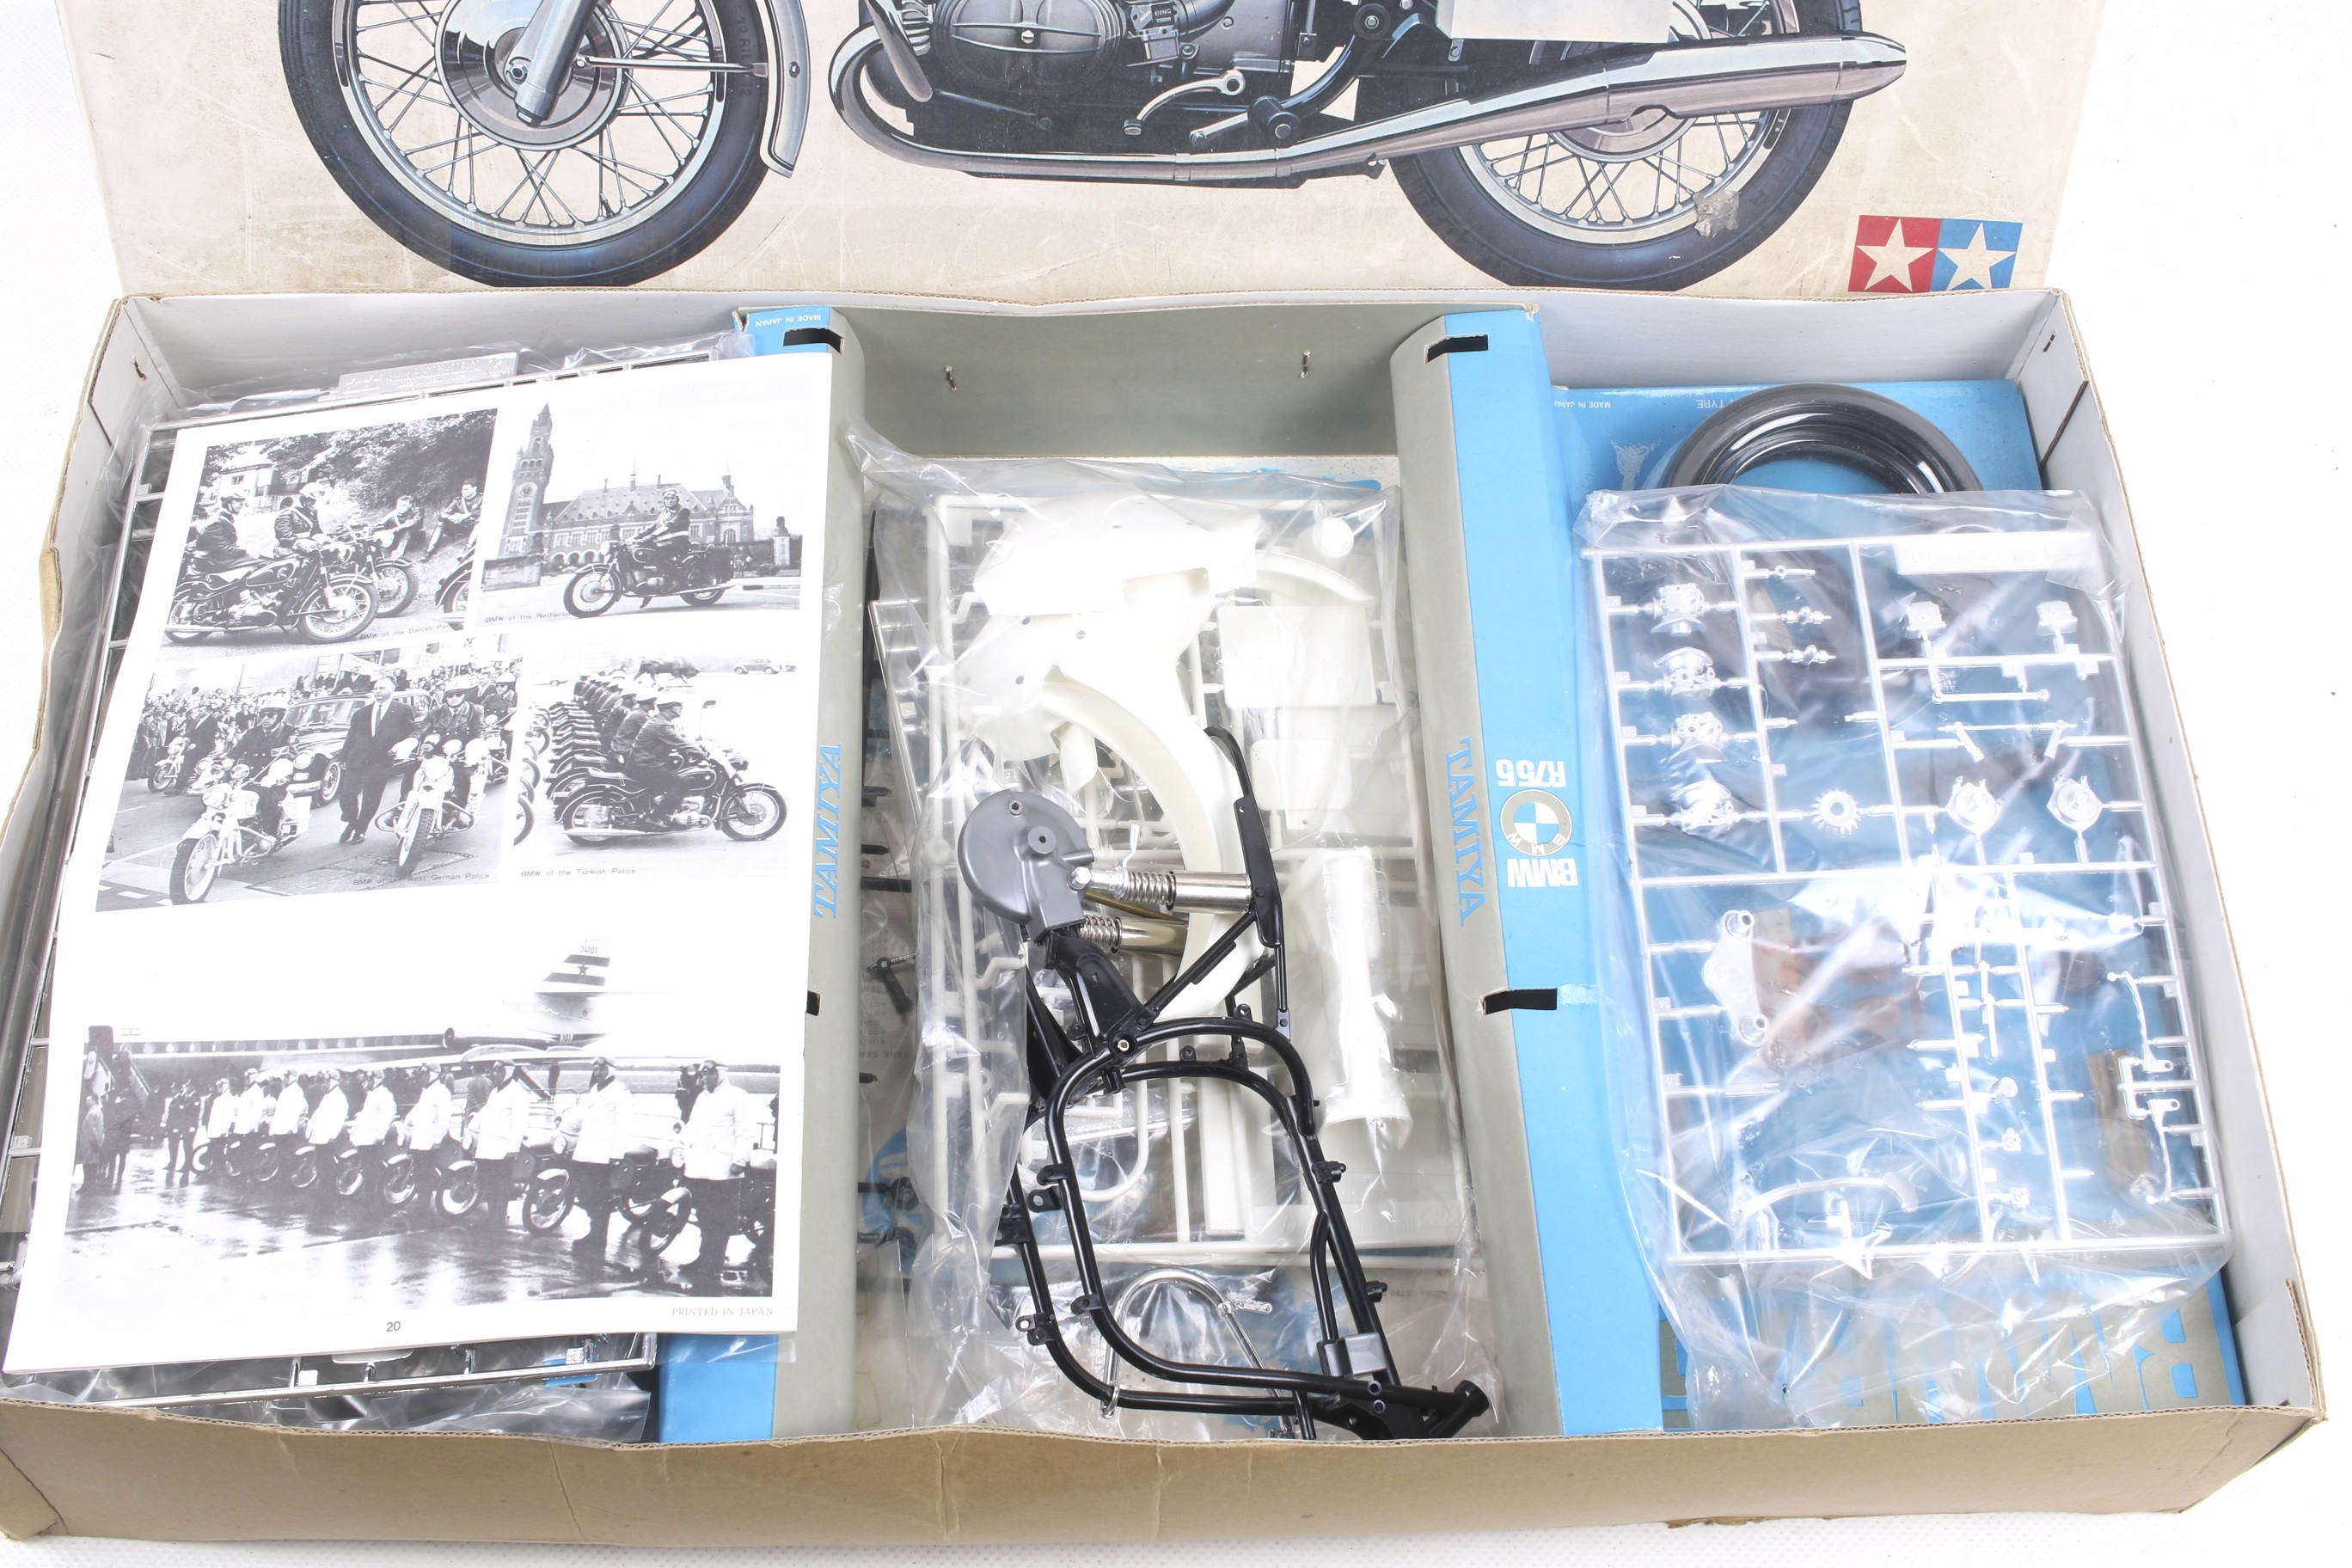 Two Tamiya motorcycle model kits. - Image 2 of 2